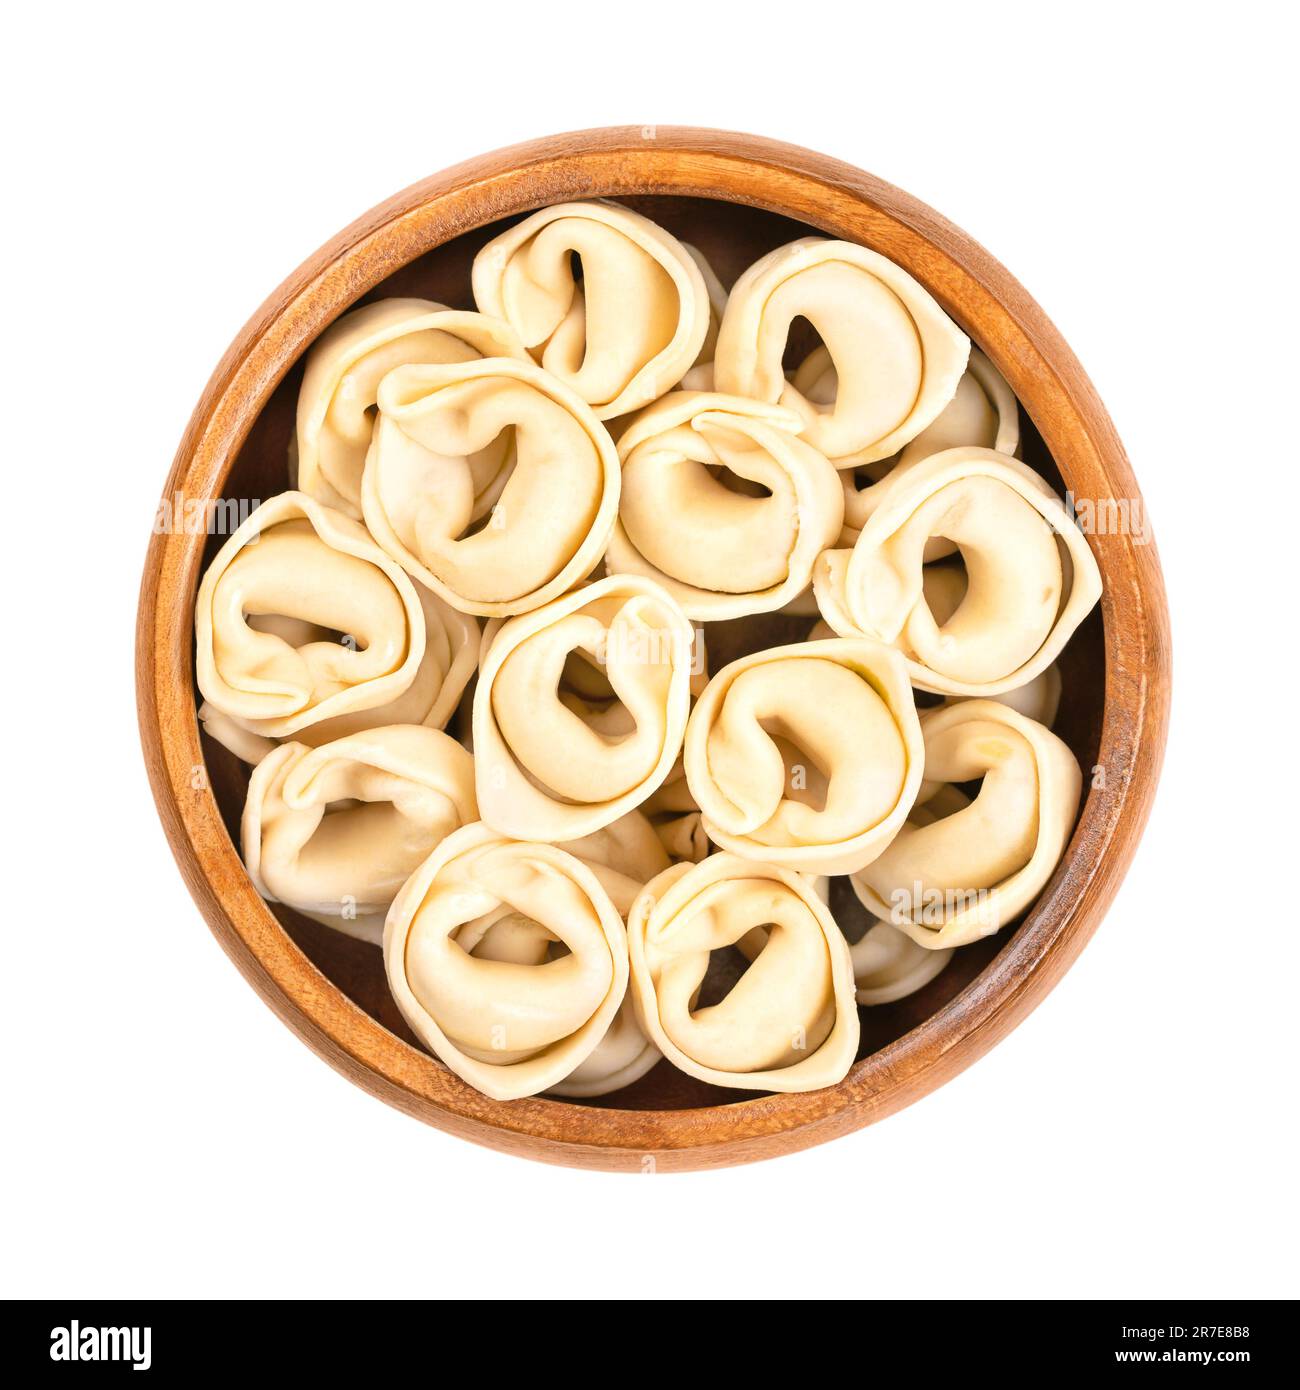 Tortellini secchi, crudi, in una ciotola di legno. Gnocchi ripieni prodotti industrialmente, pasta italiana, dalla forma distintiva. Foto Stock